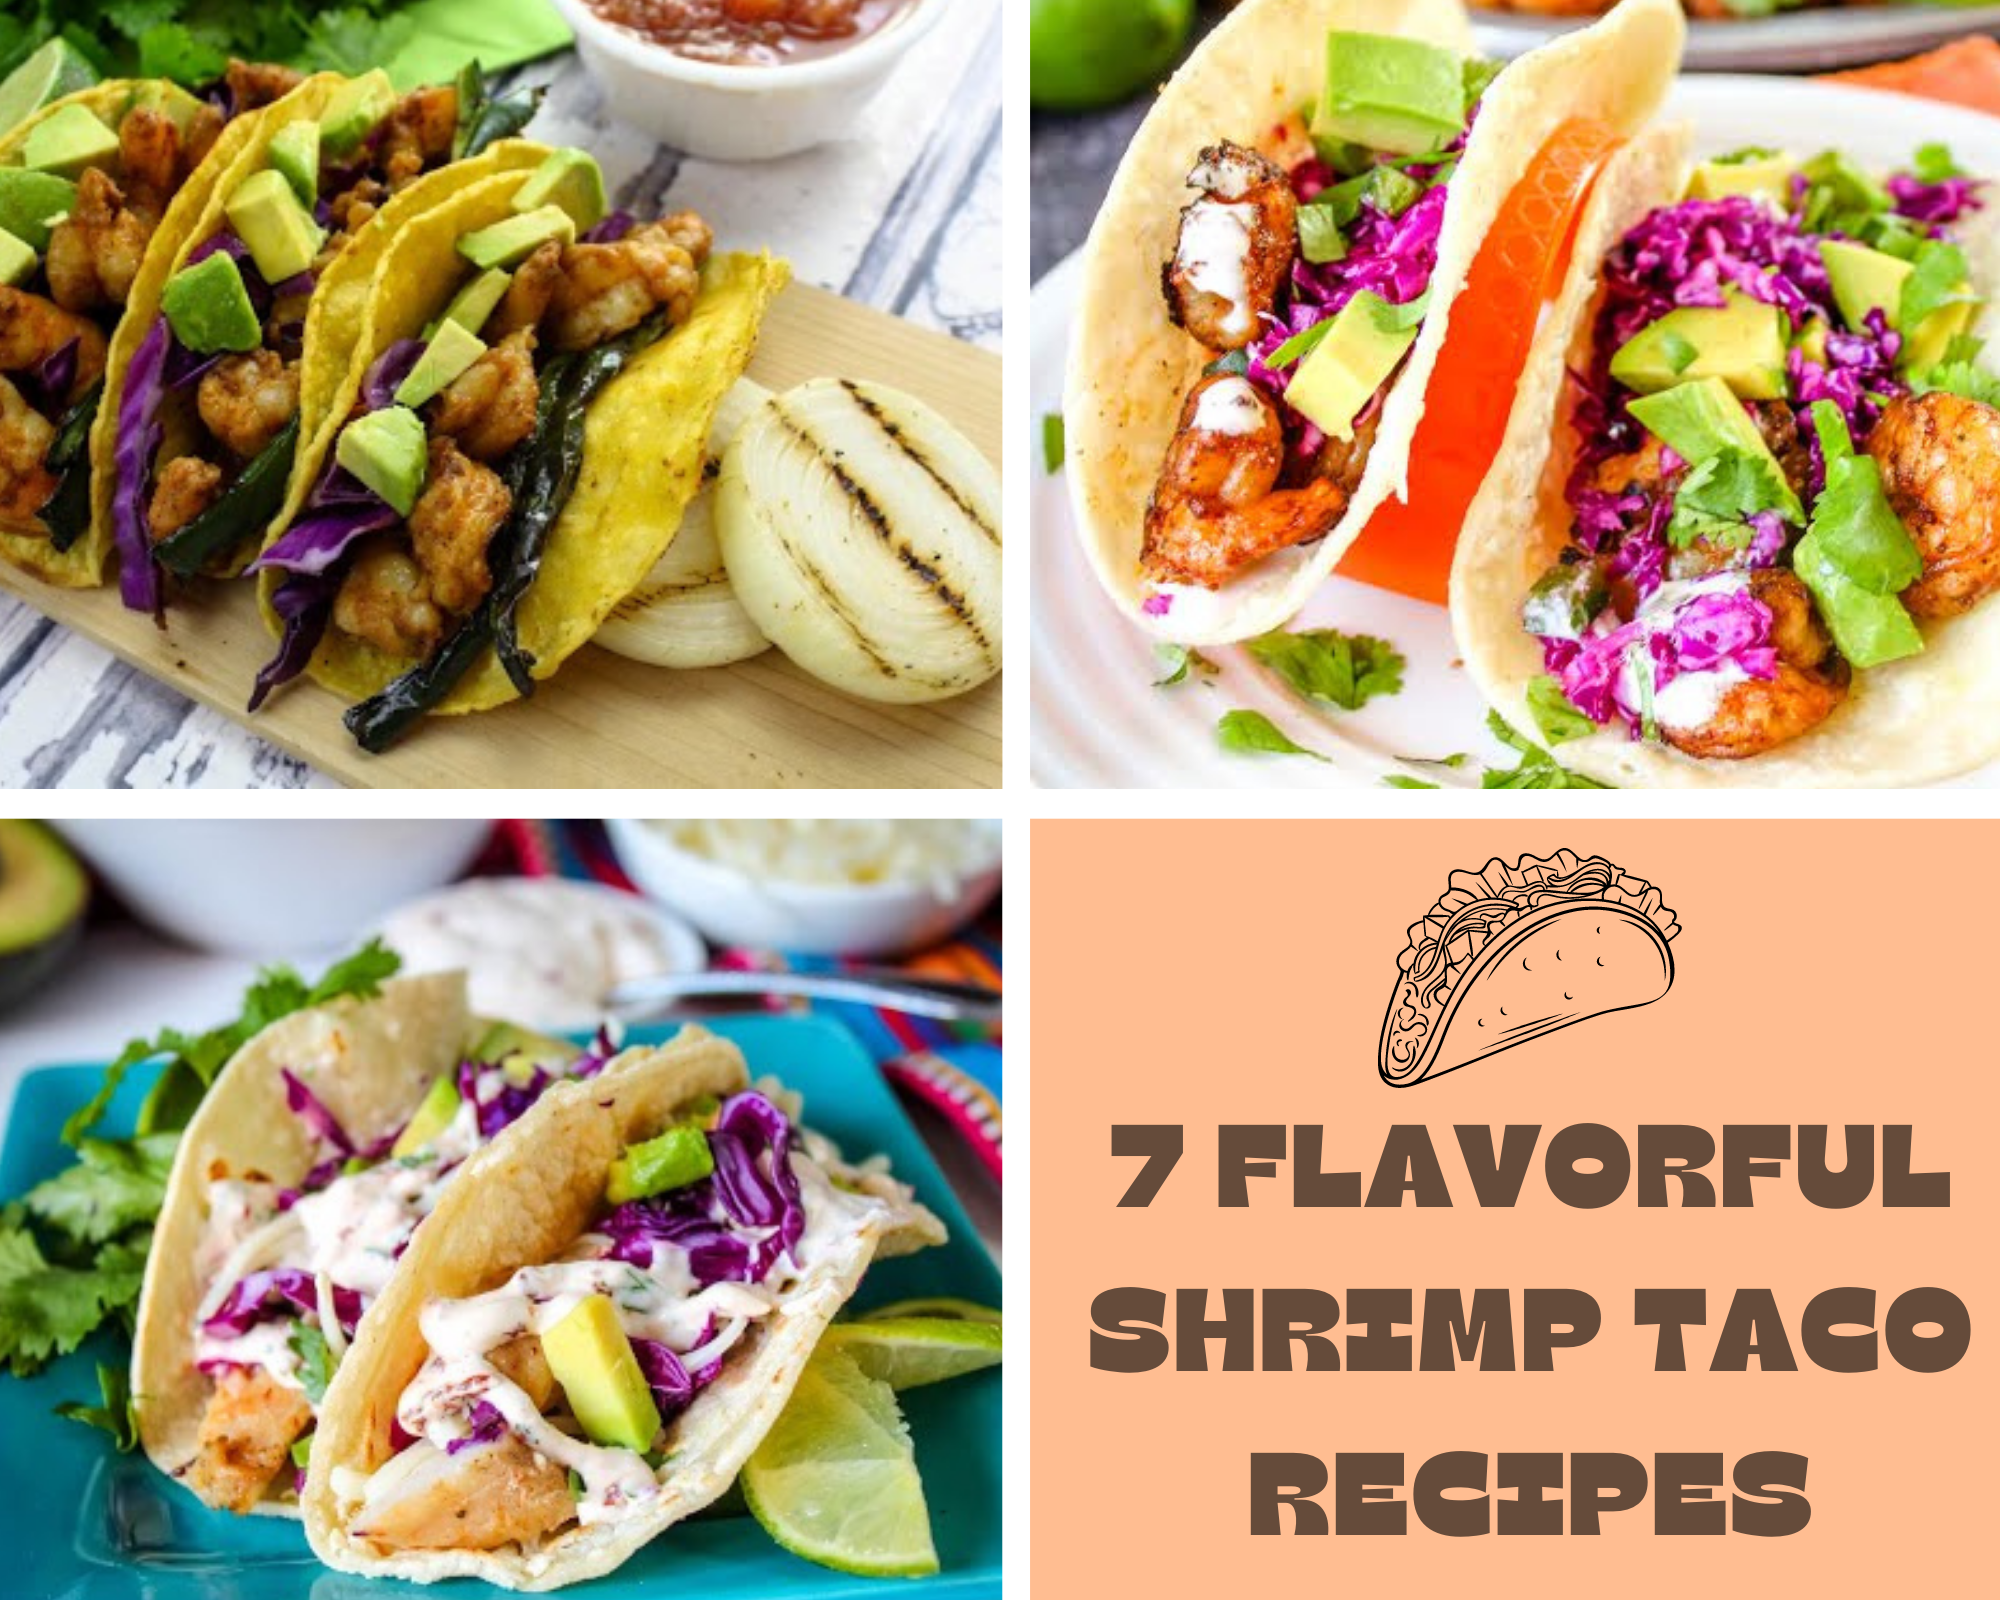 shrimp taco recipes